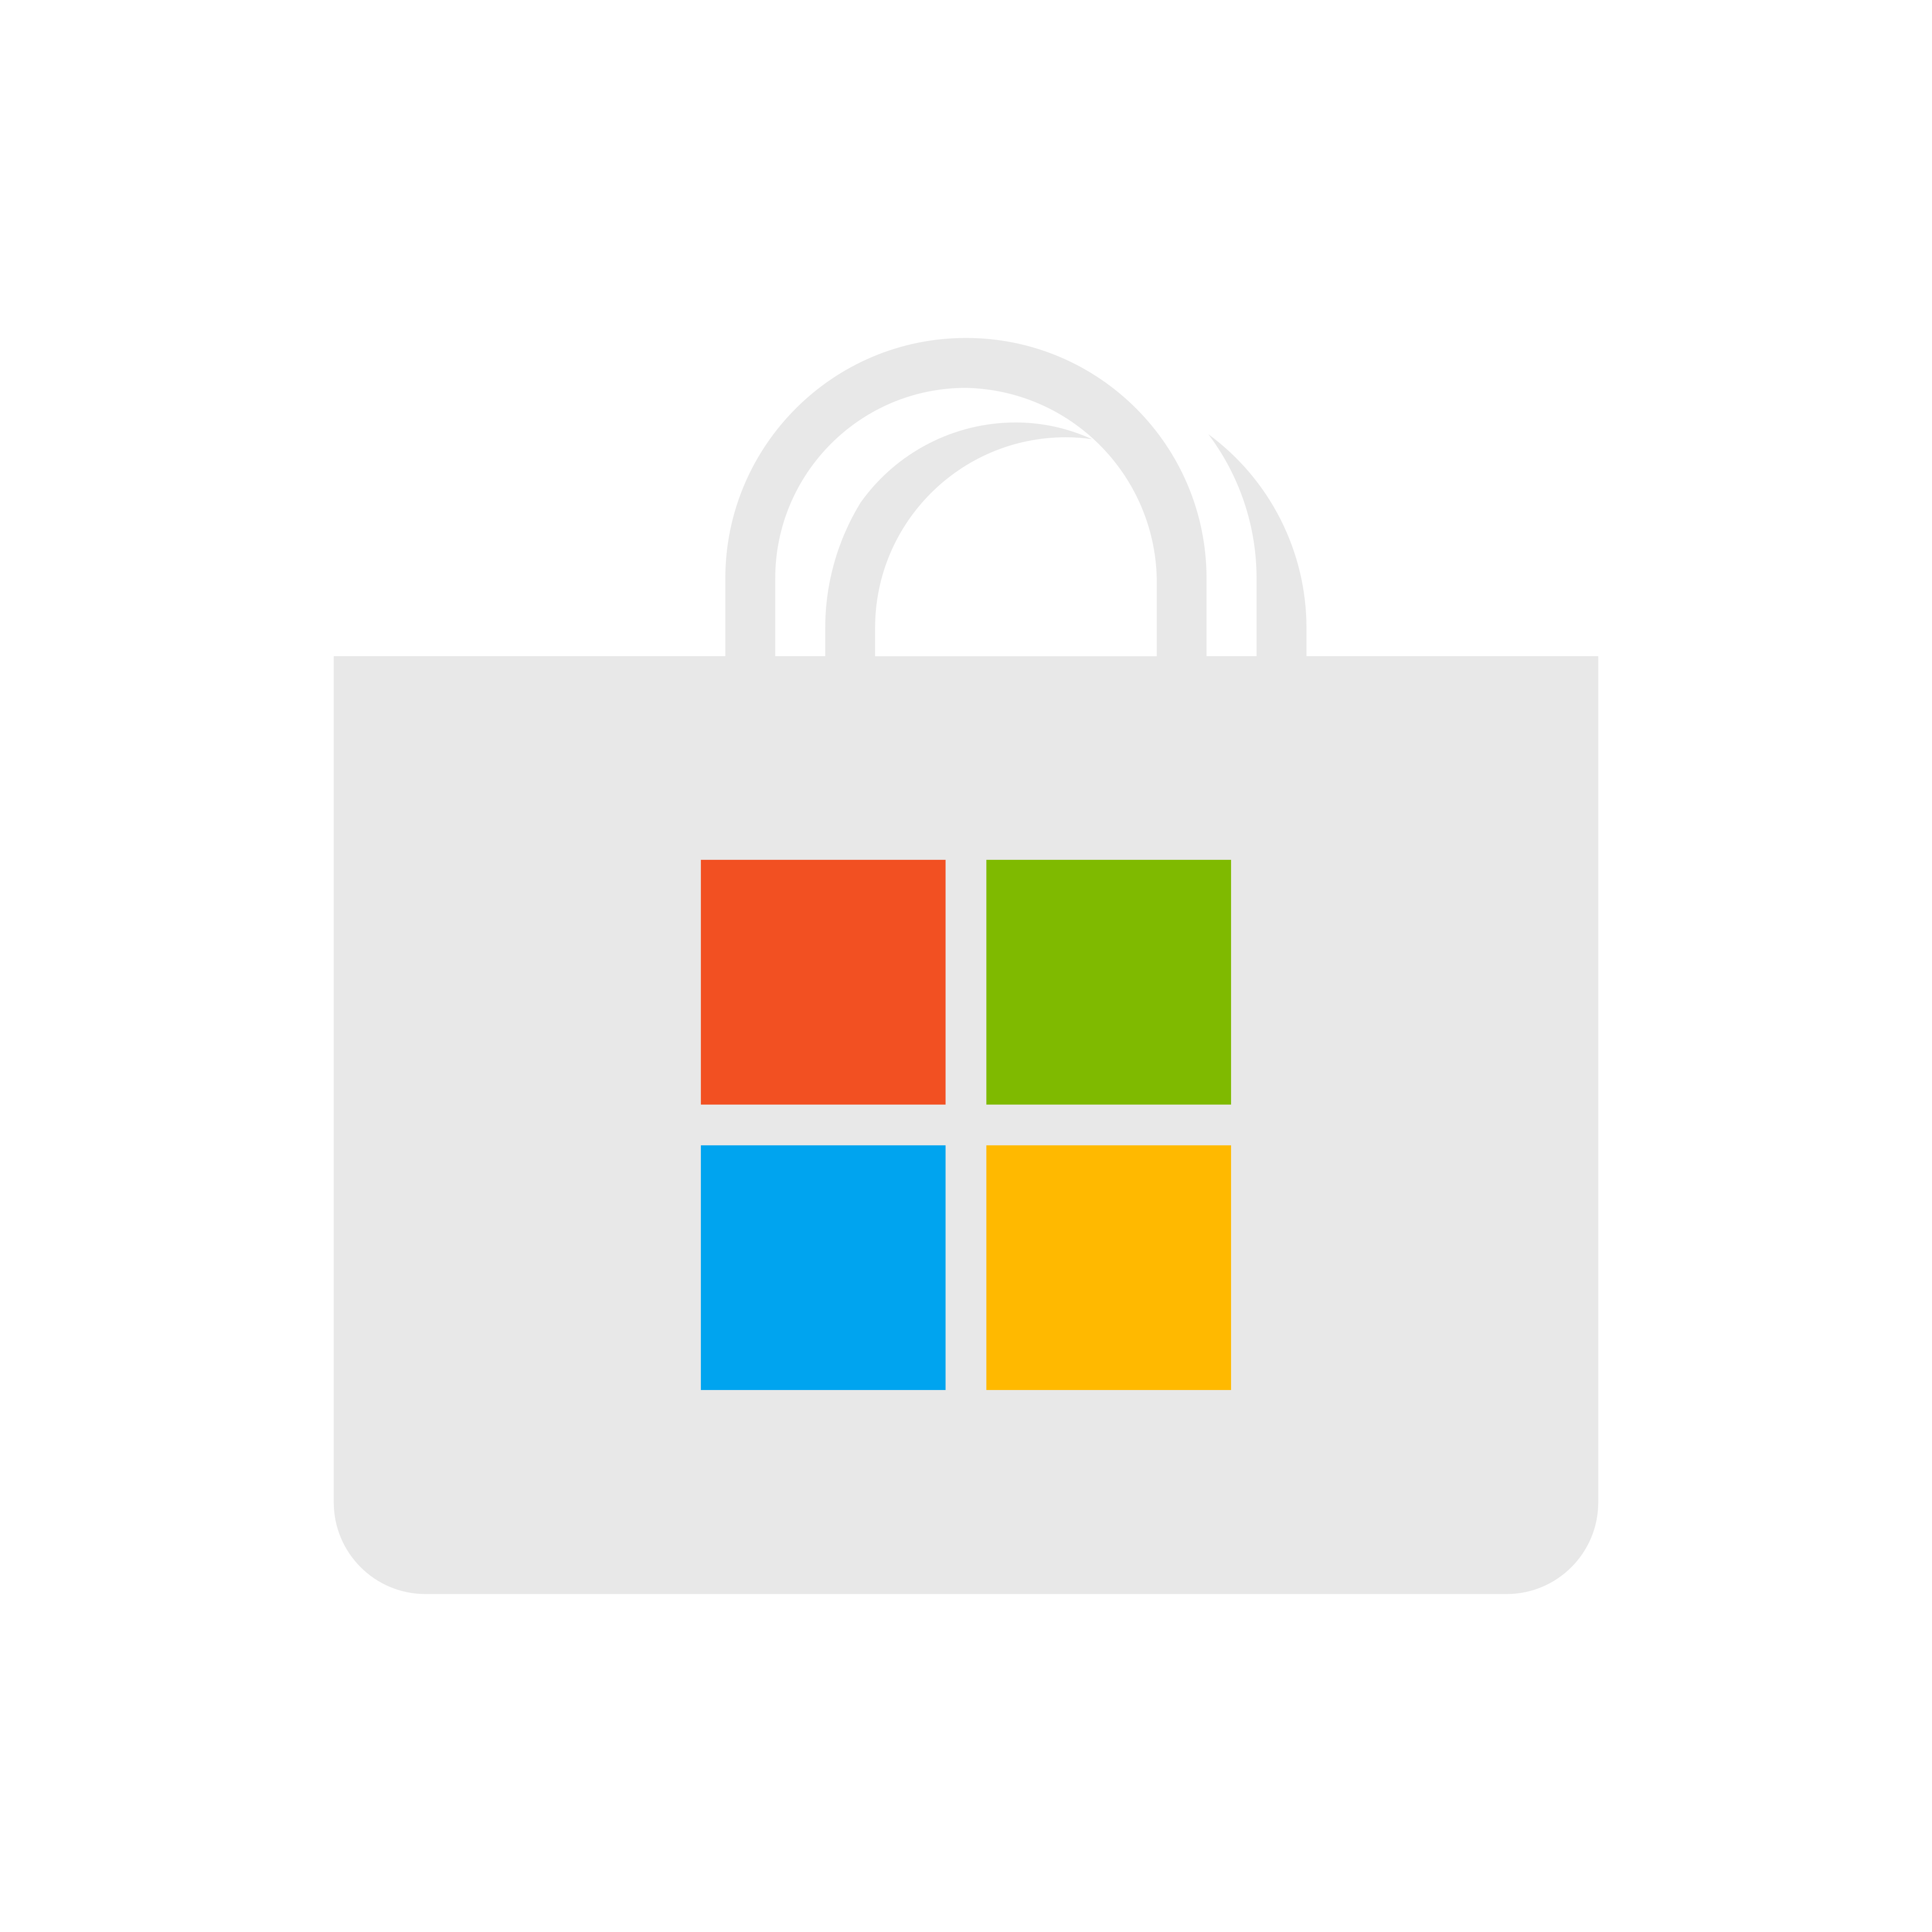 microsoft store logo 0 - Microsoft Store Logo